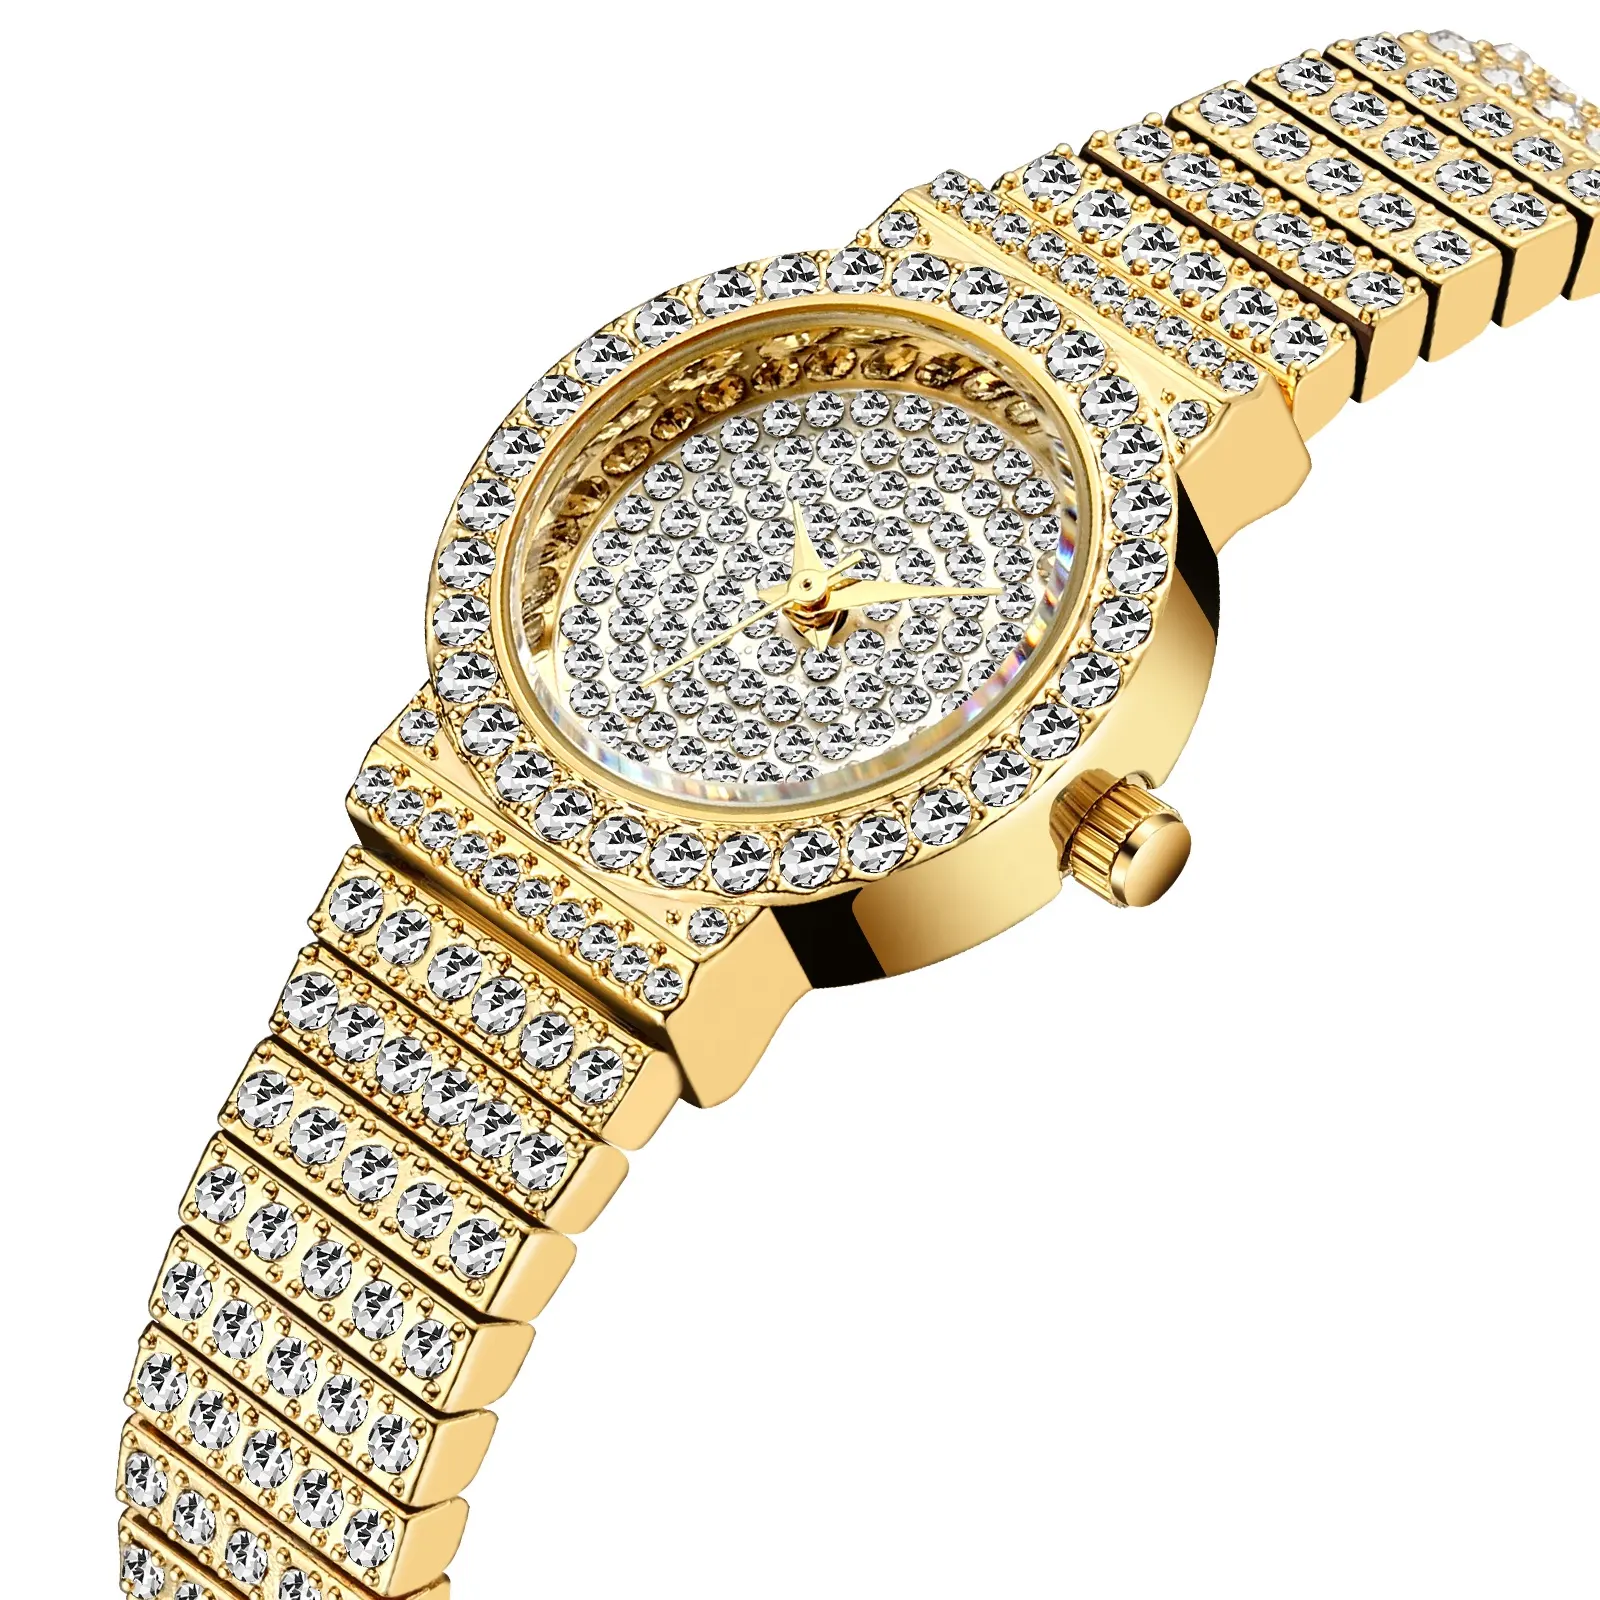 Reloj de marca de lujo para mujer, elegante reloj de Golf impermeable para mujer con cristales, tendencia 2020, reloj femenino, regalos, joyería ostentosa